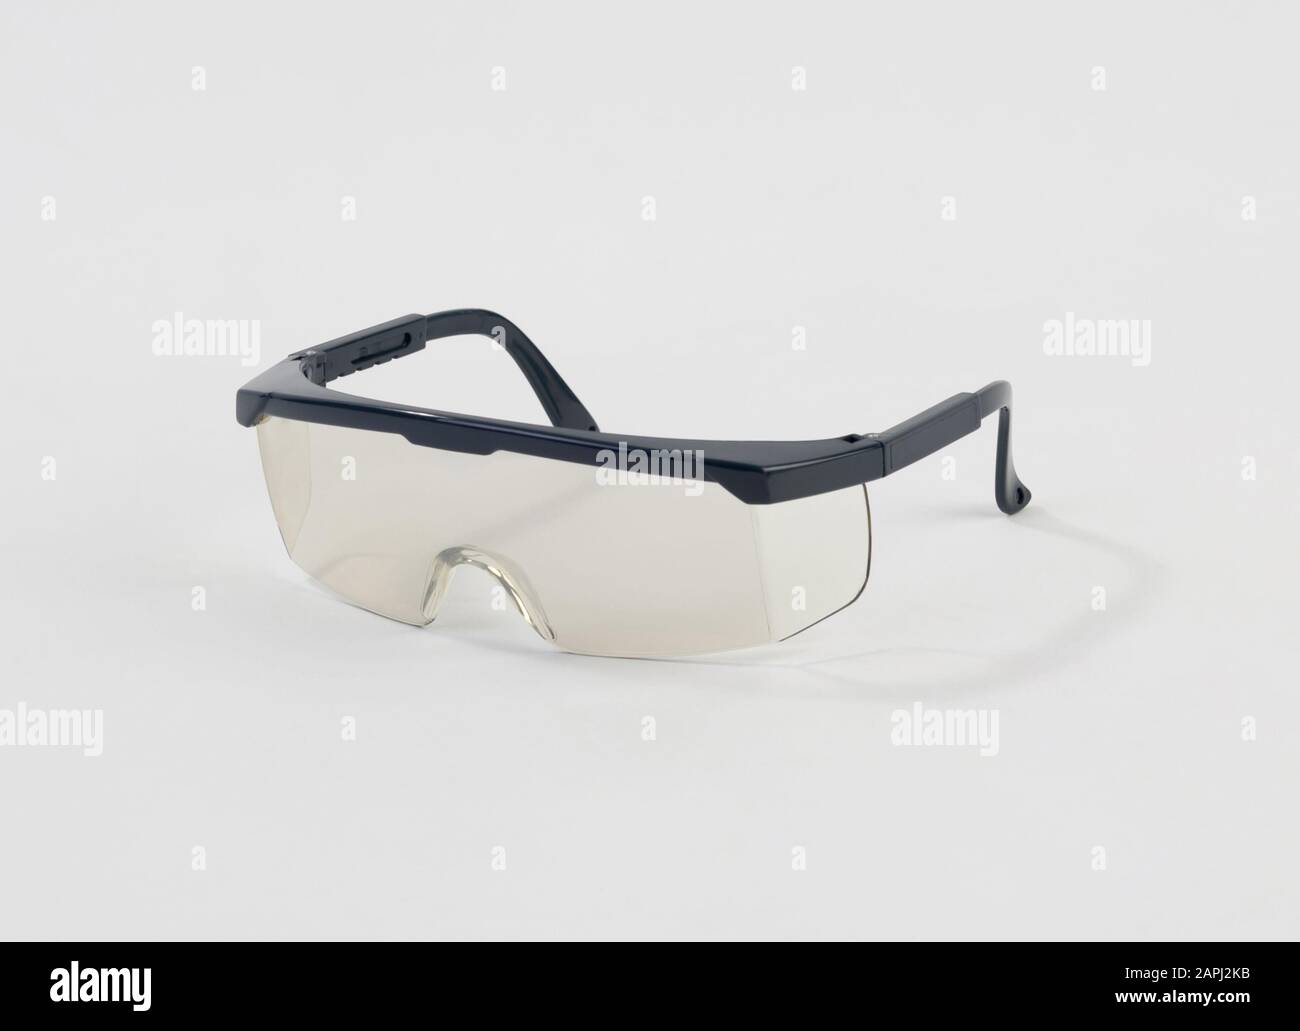 Safety glasses, protection eyewear isolated on white background Stock Photo